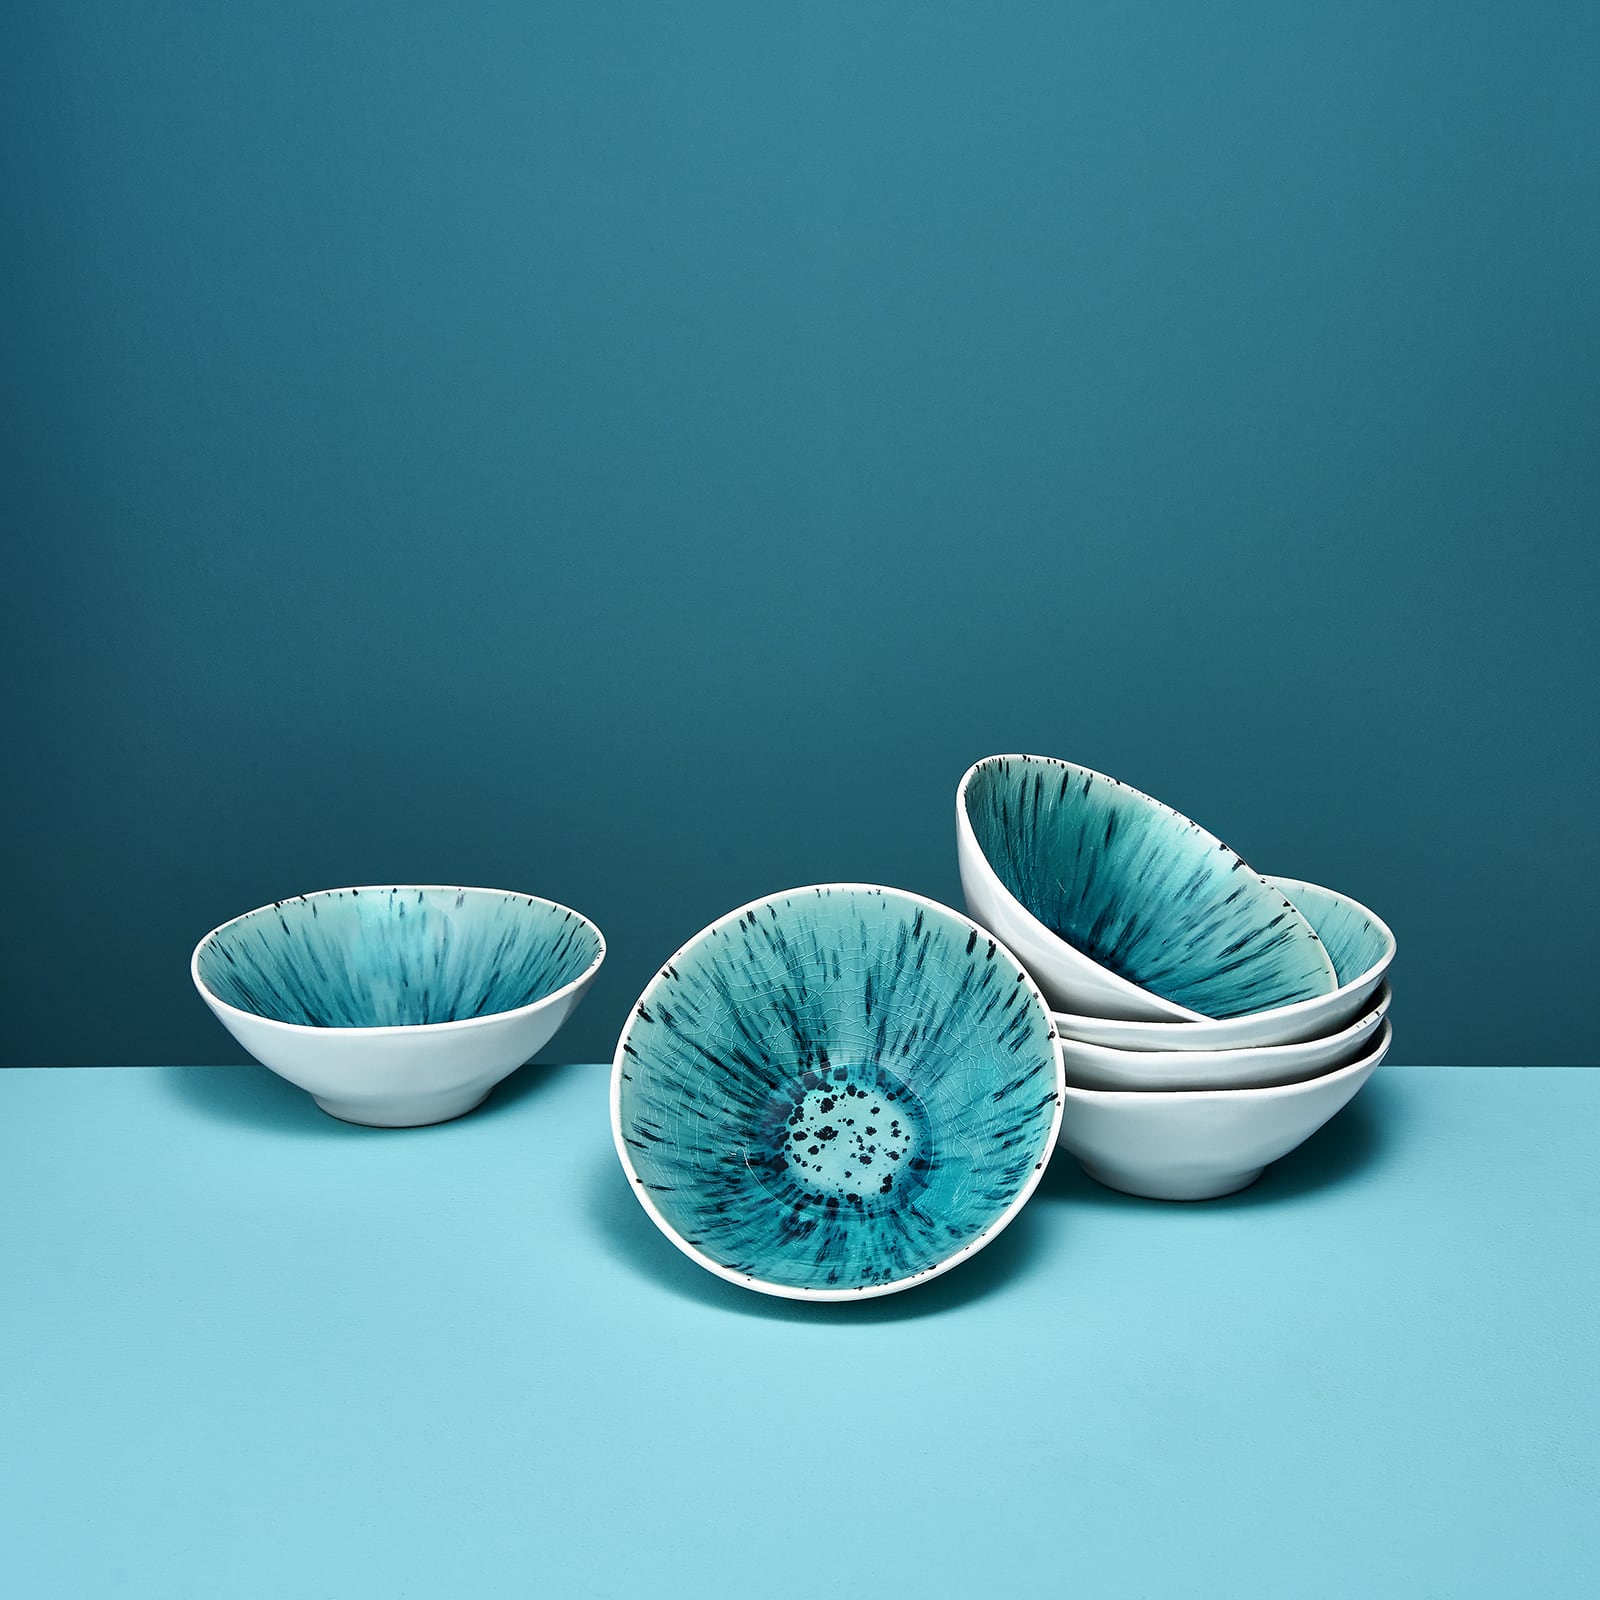 Set of 6 bowls Aquamarin, white/turquoise, stoneware, 15x5.5 cm